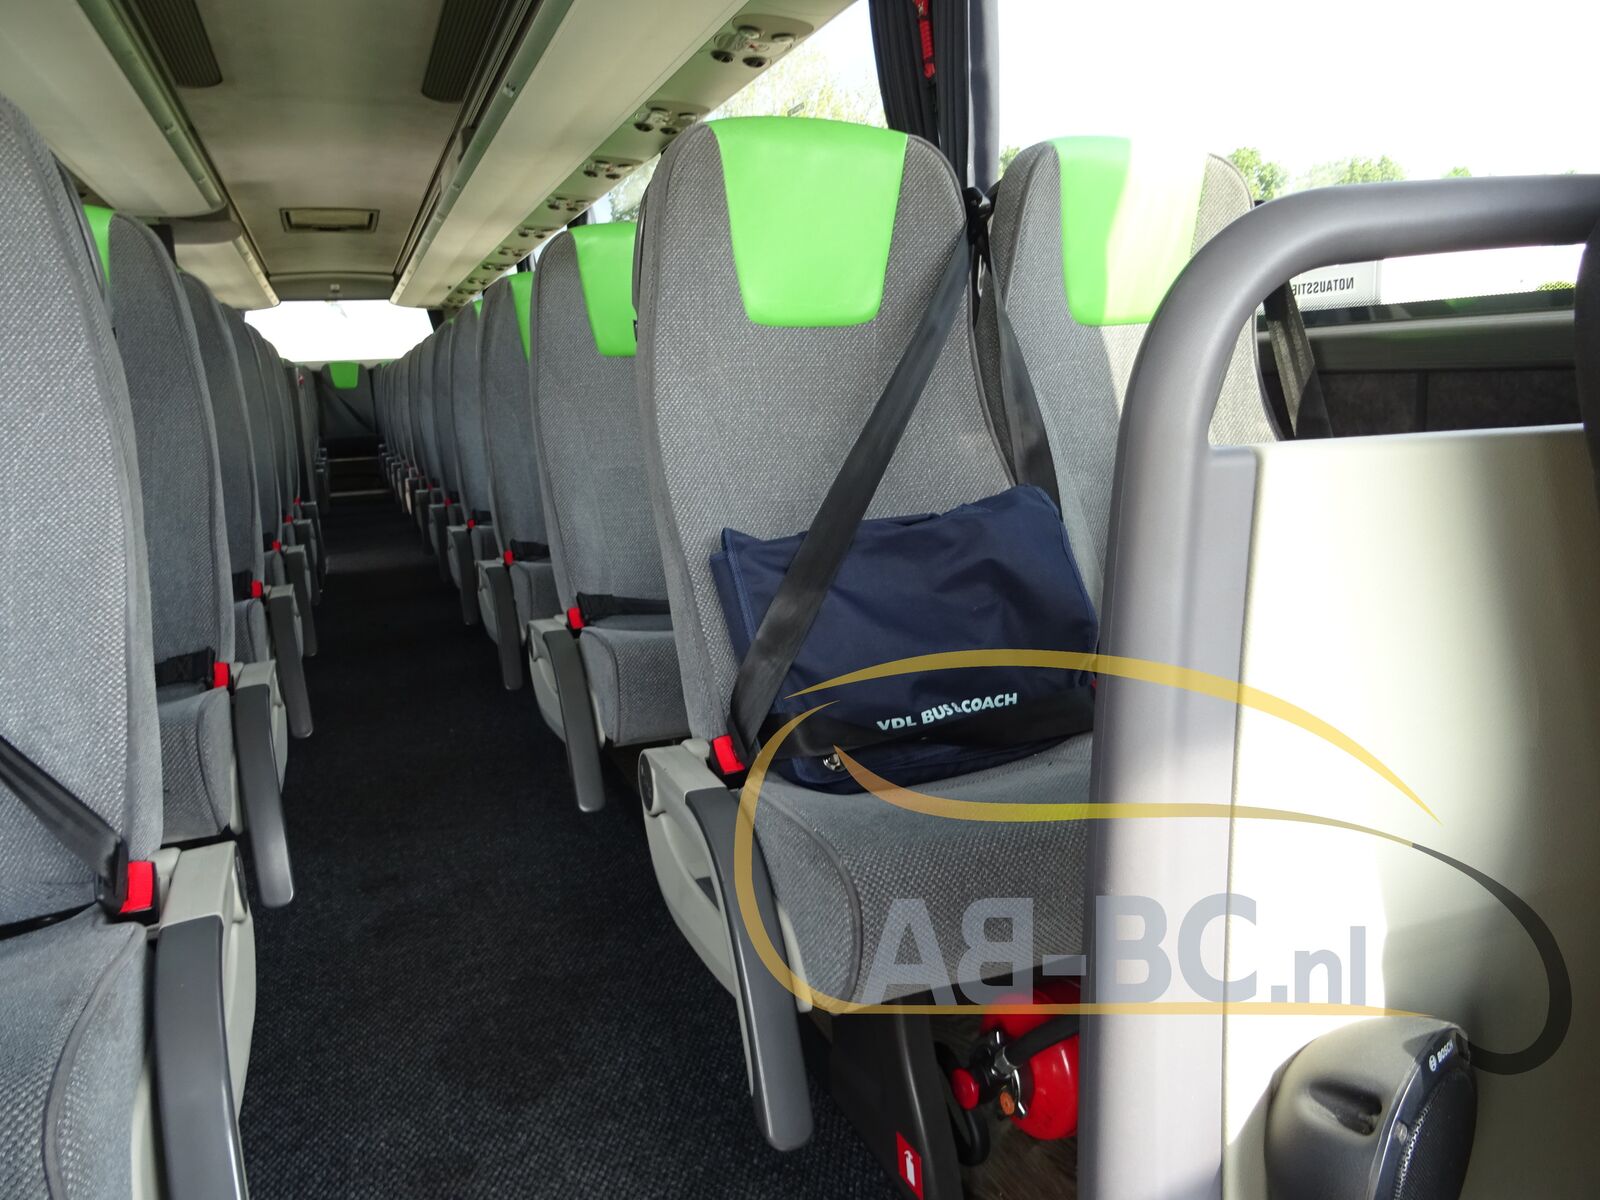 coach-bus-VDL-Futura-FHD2-129-440-51-Seats-EURO-6-2-PIECES-AVAILABLE---1651157575099086310_orig_683383d4949a7327bcd4fde2e2494dce--22042817510111469500